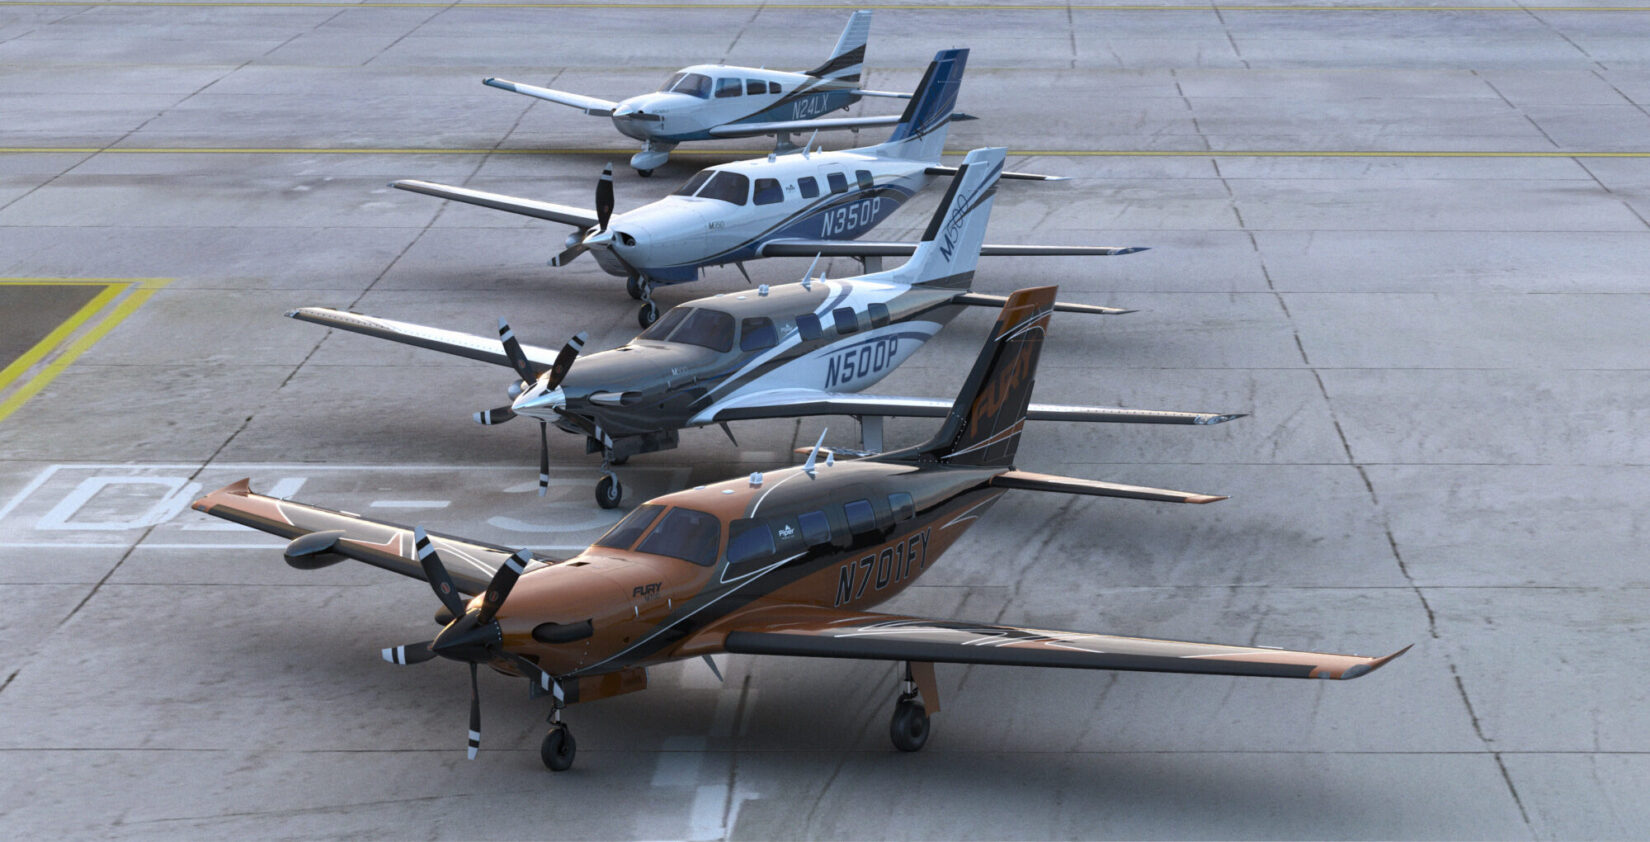 Fleet of Aircrafts